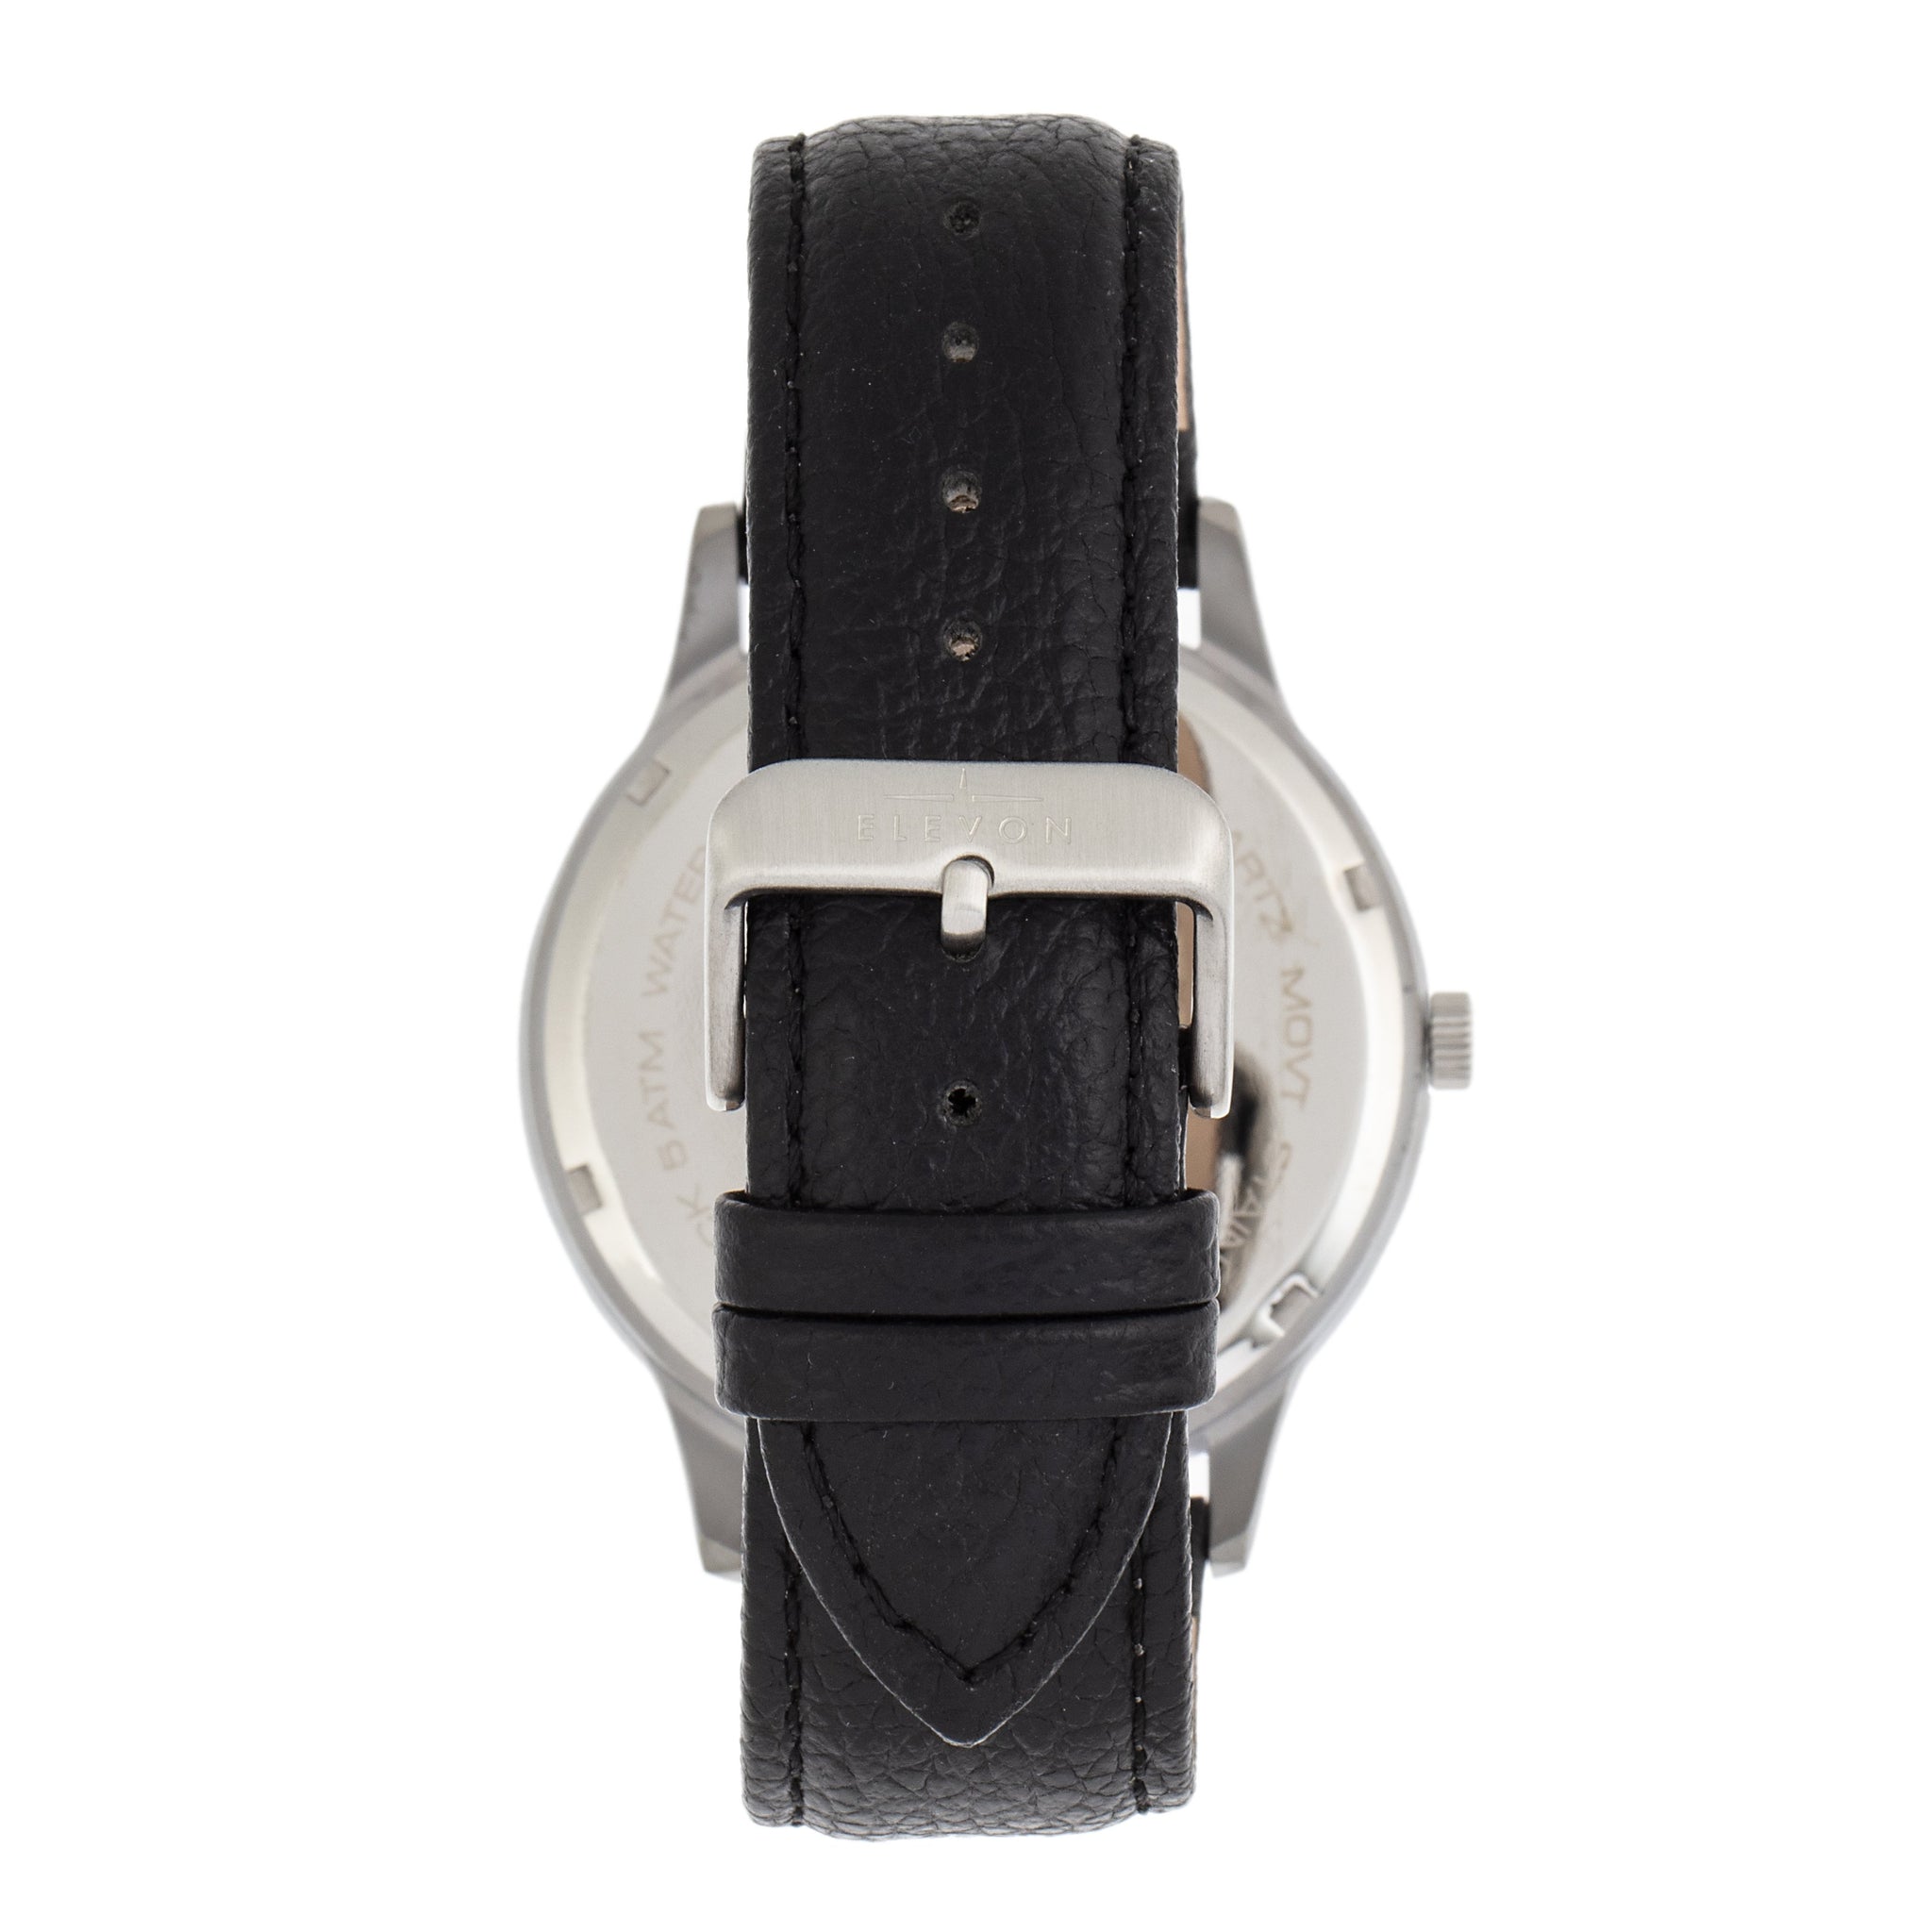 Elevon Turbine Leather-Band Watch - Silver/Black - ELE116-2